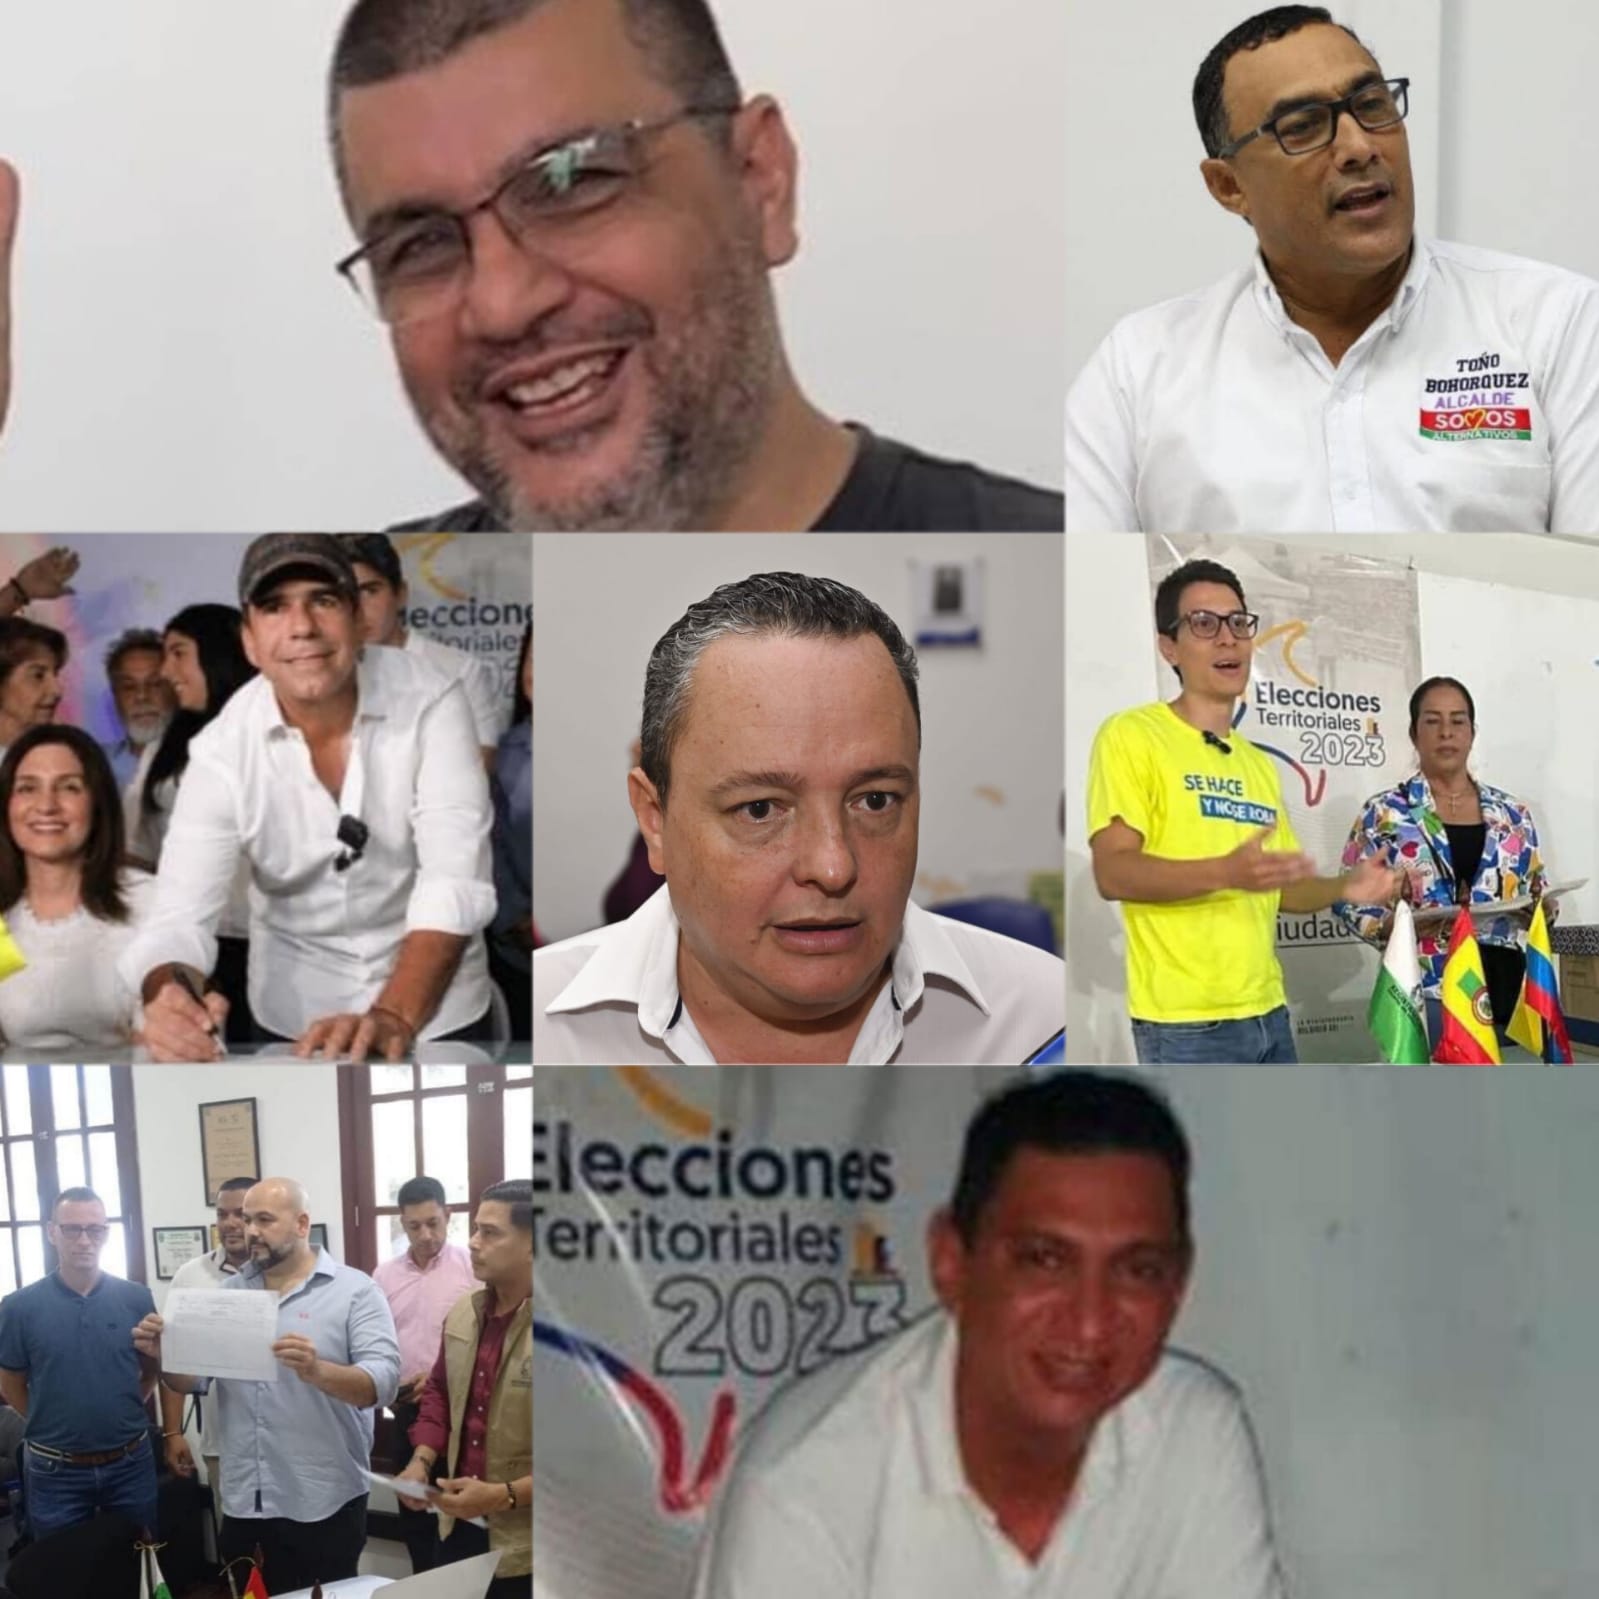 Con Rigail Romero y Antonio Bohórquez, se completa la lista de candidatos inscritos a la Alcaldía de Barranquilla.